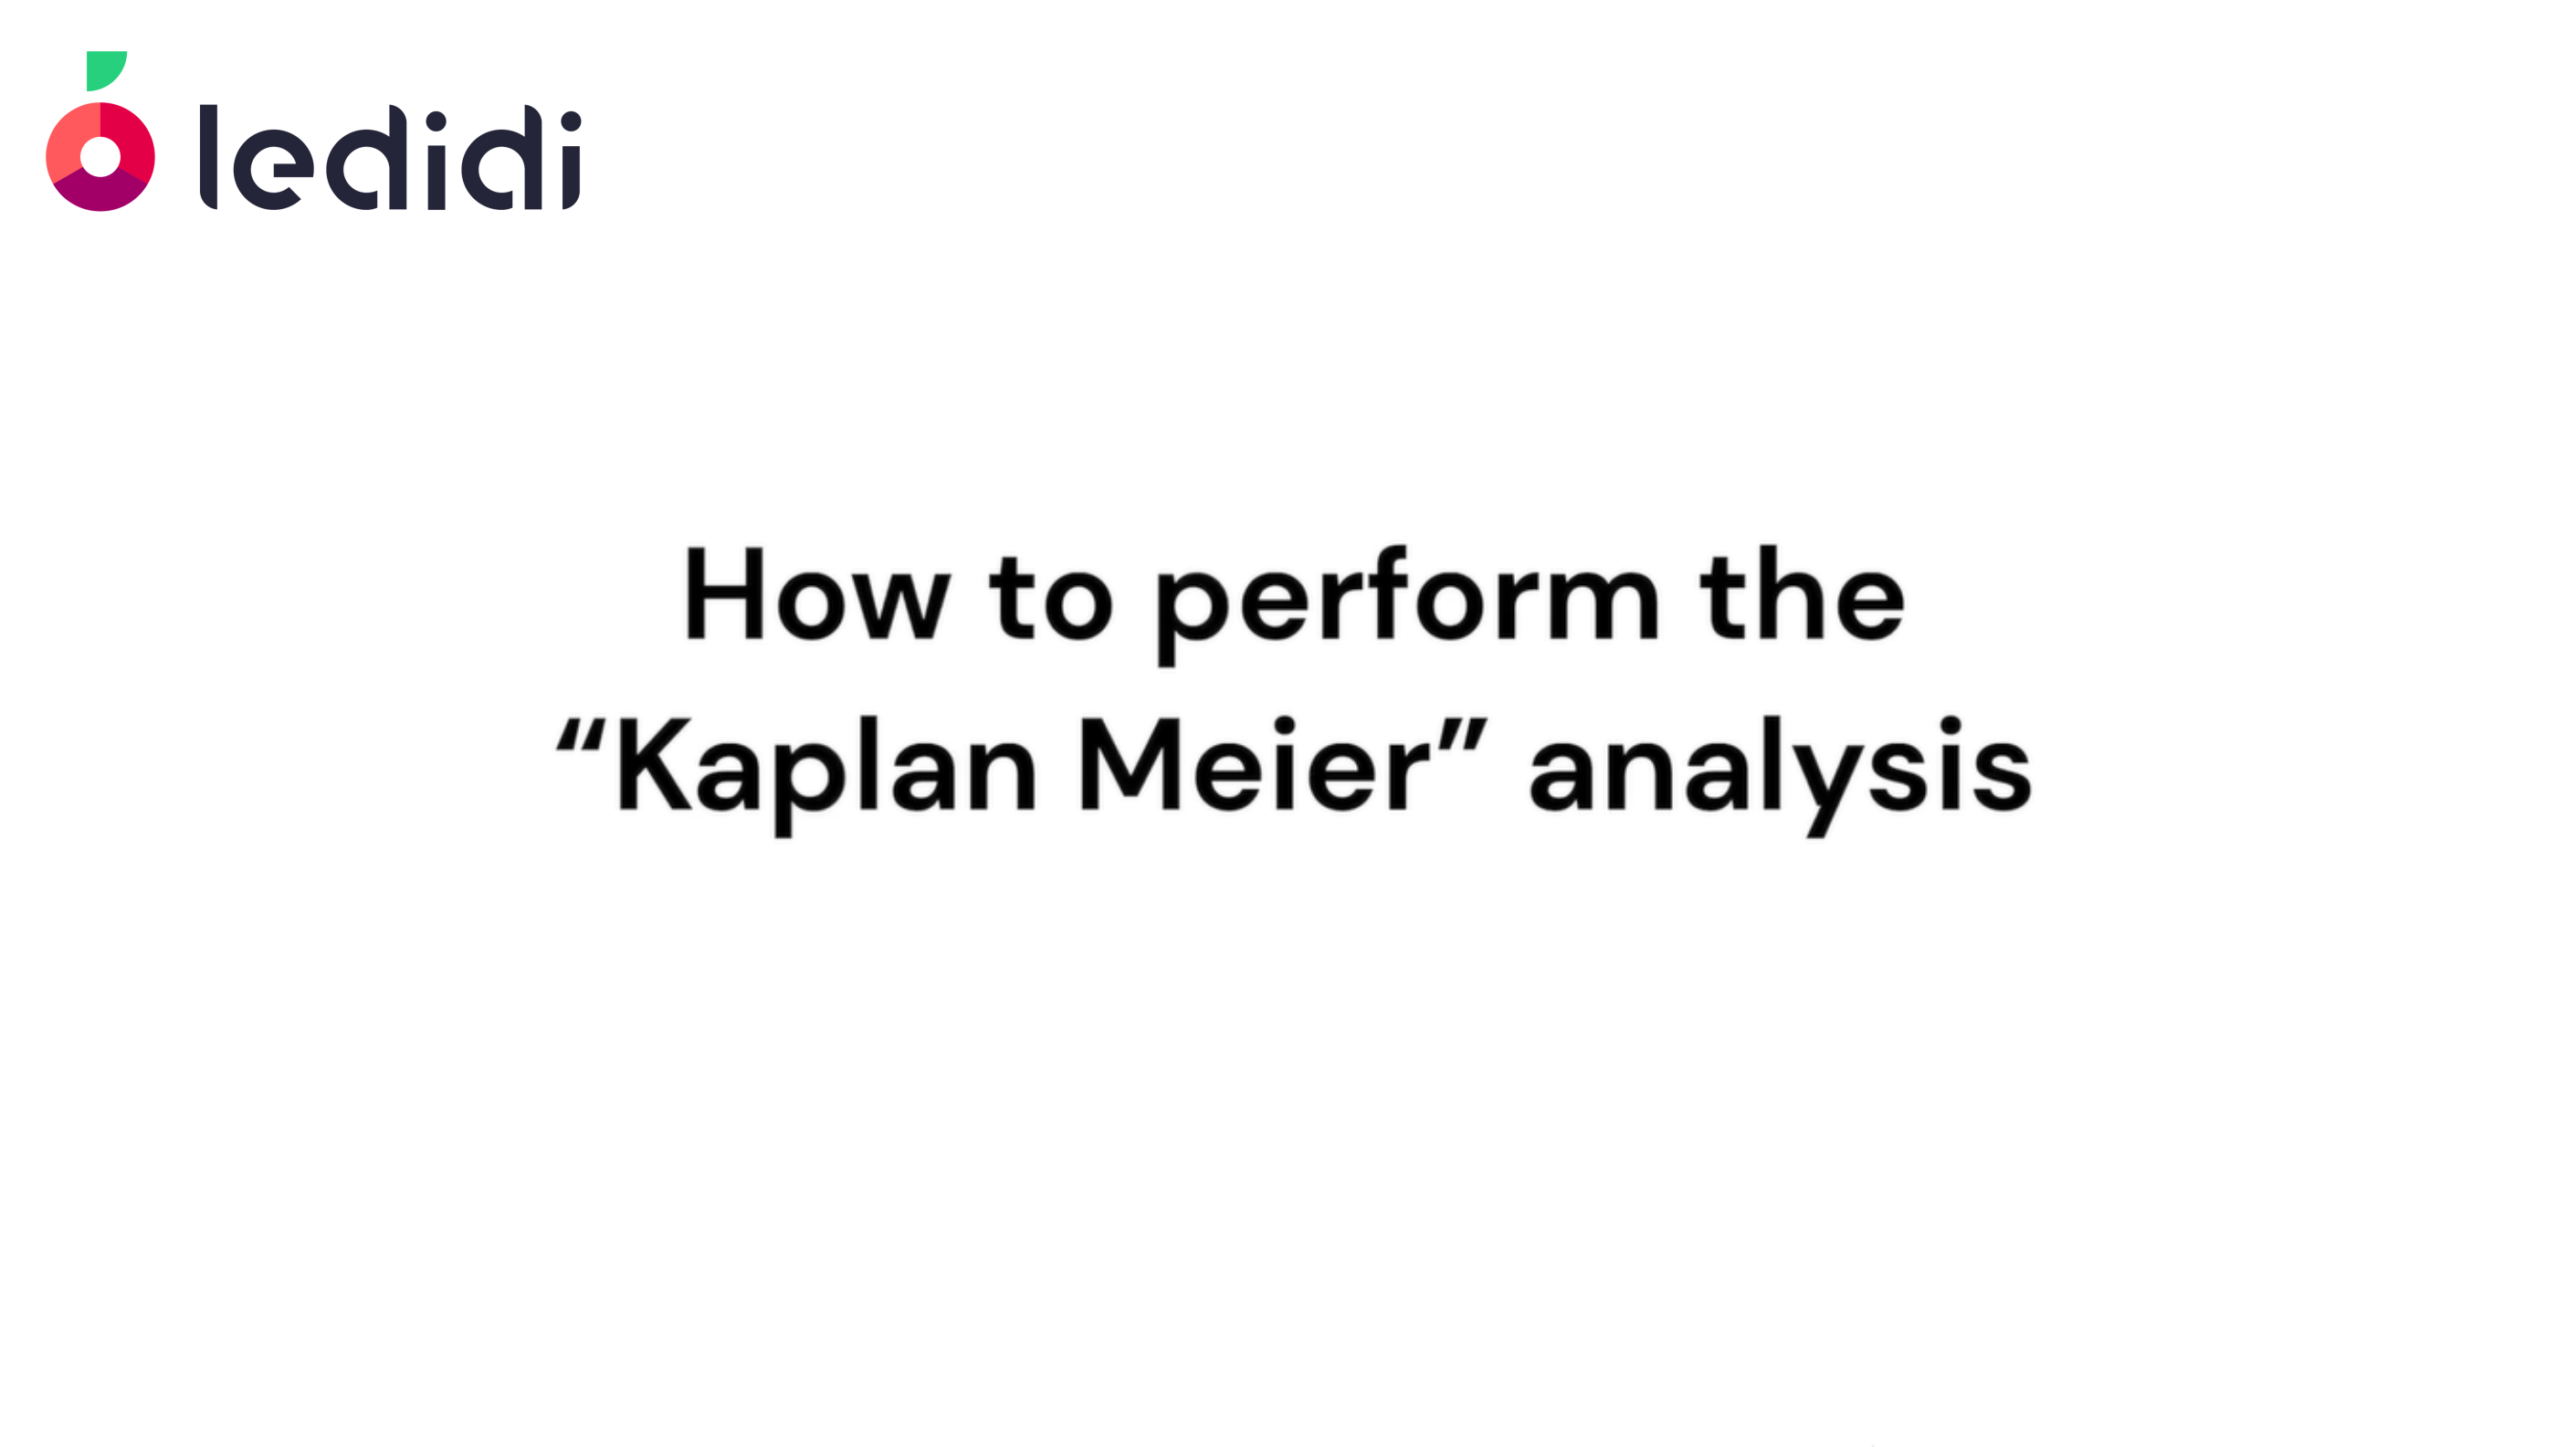 How to perform the "Kaplan Meier" analysis